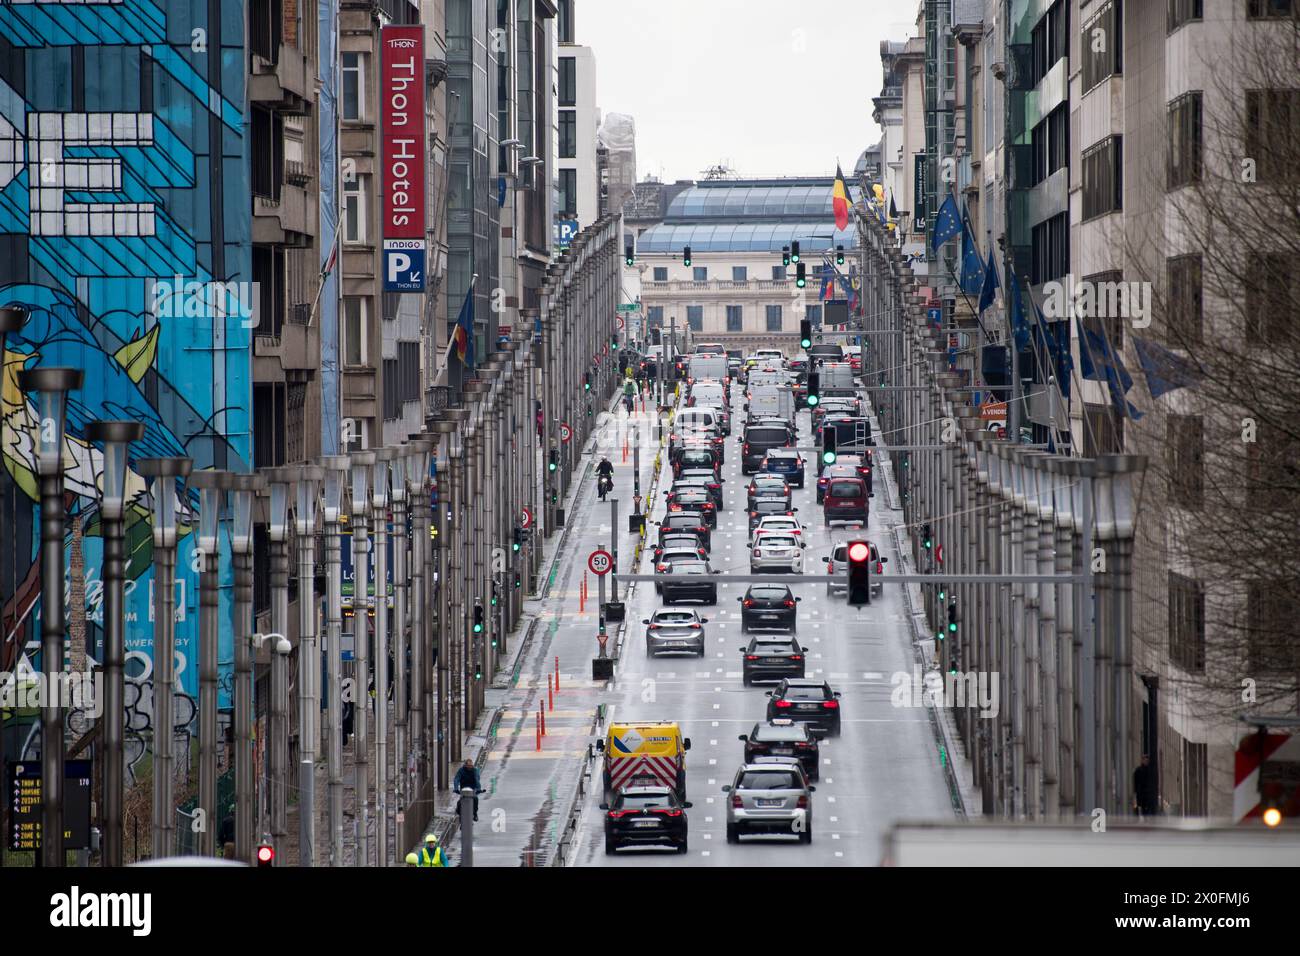 Rue de la Loi / Wetstraat nel quartiere europeo di Bruxelles, Belgio © Wojciech Strozyk / Alamy Stock Photo *** Local Caption *** Foto Stock